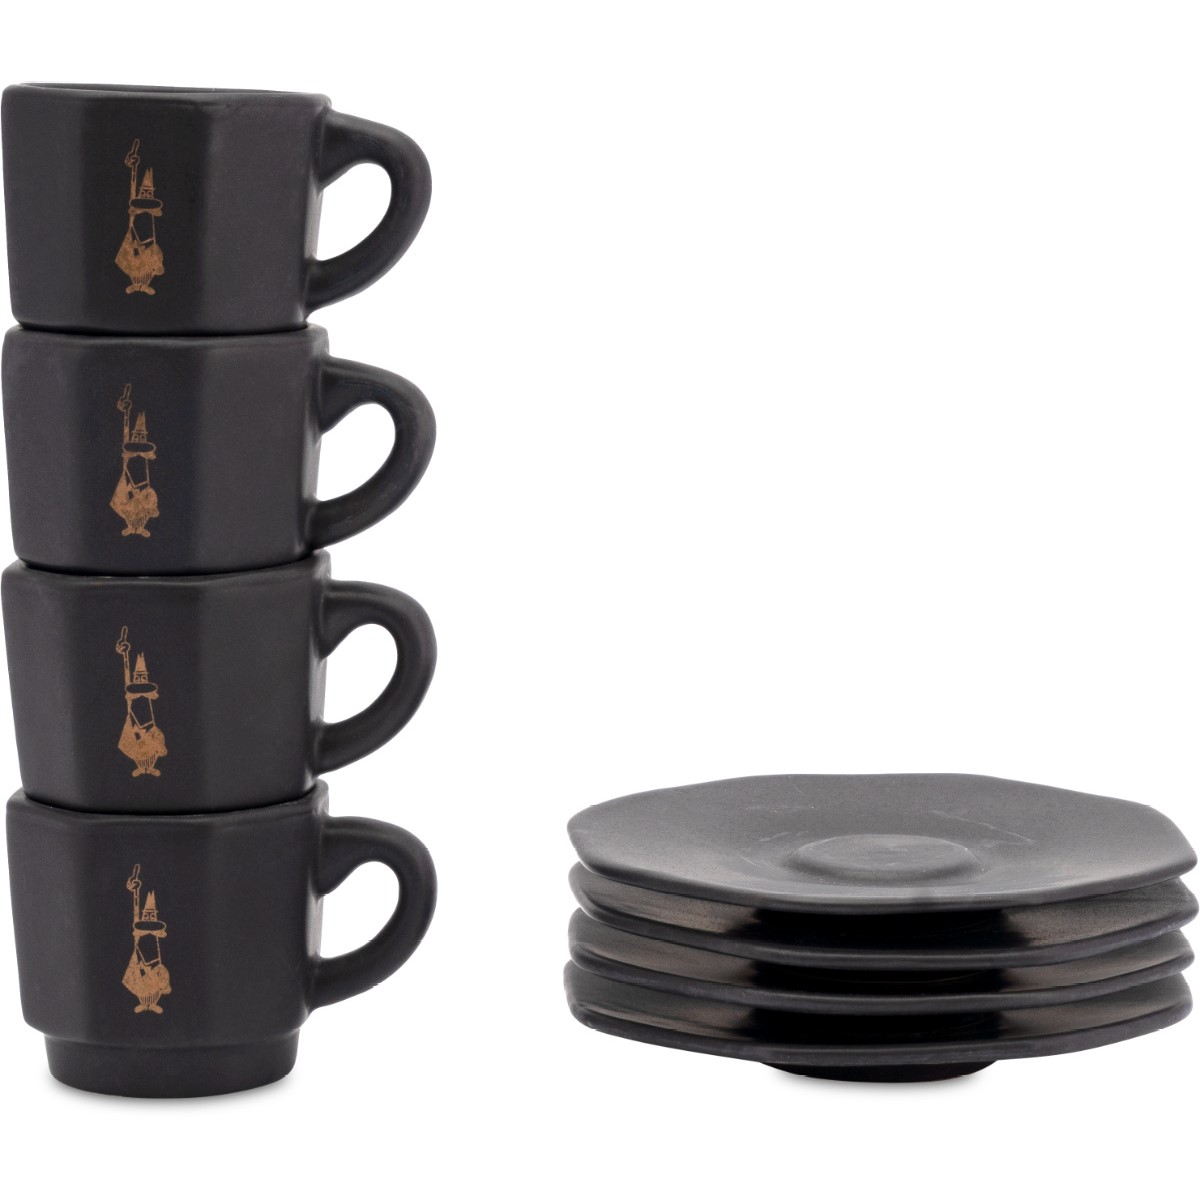 Espressotassen Set schwarz gestapelt von Bialetti